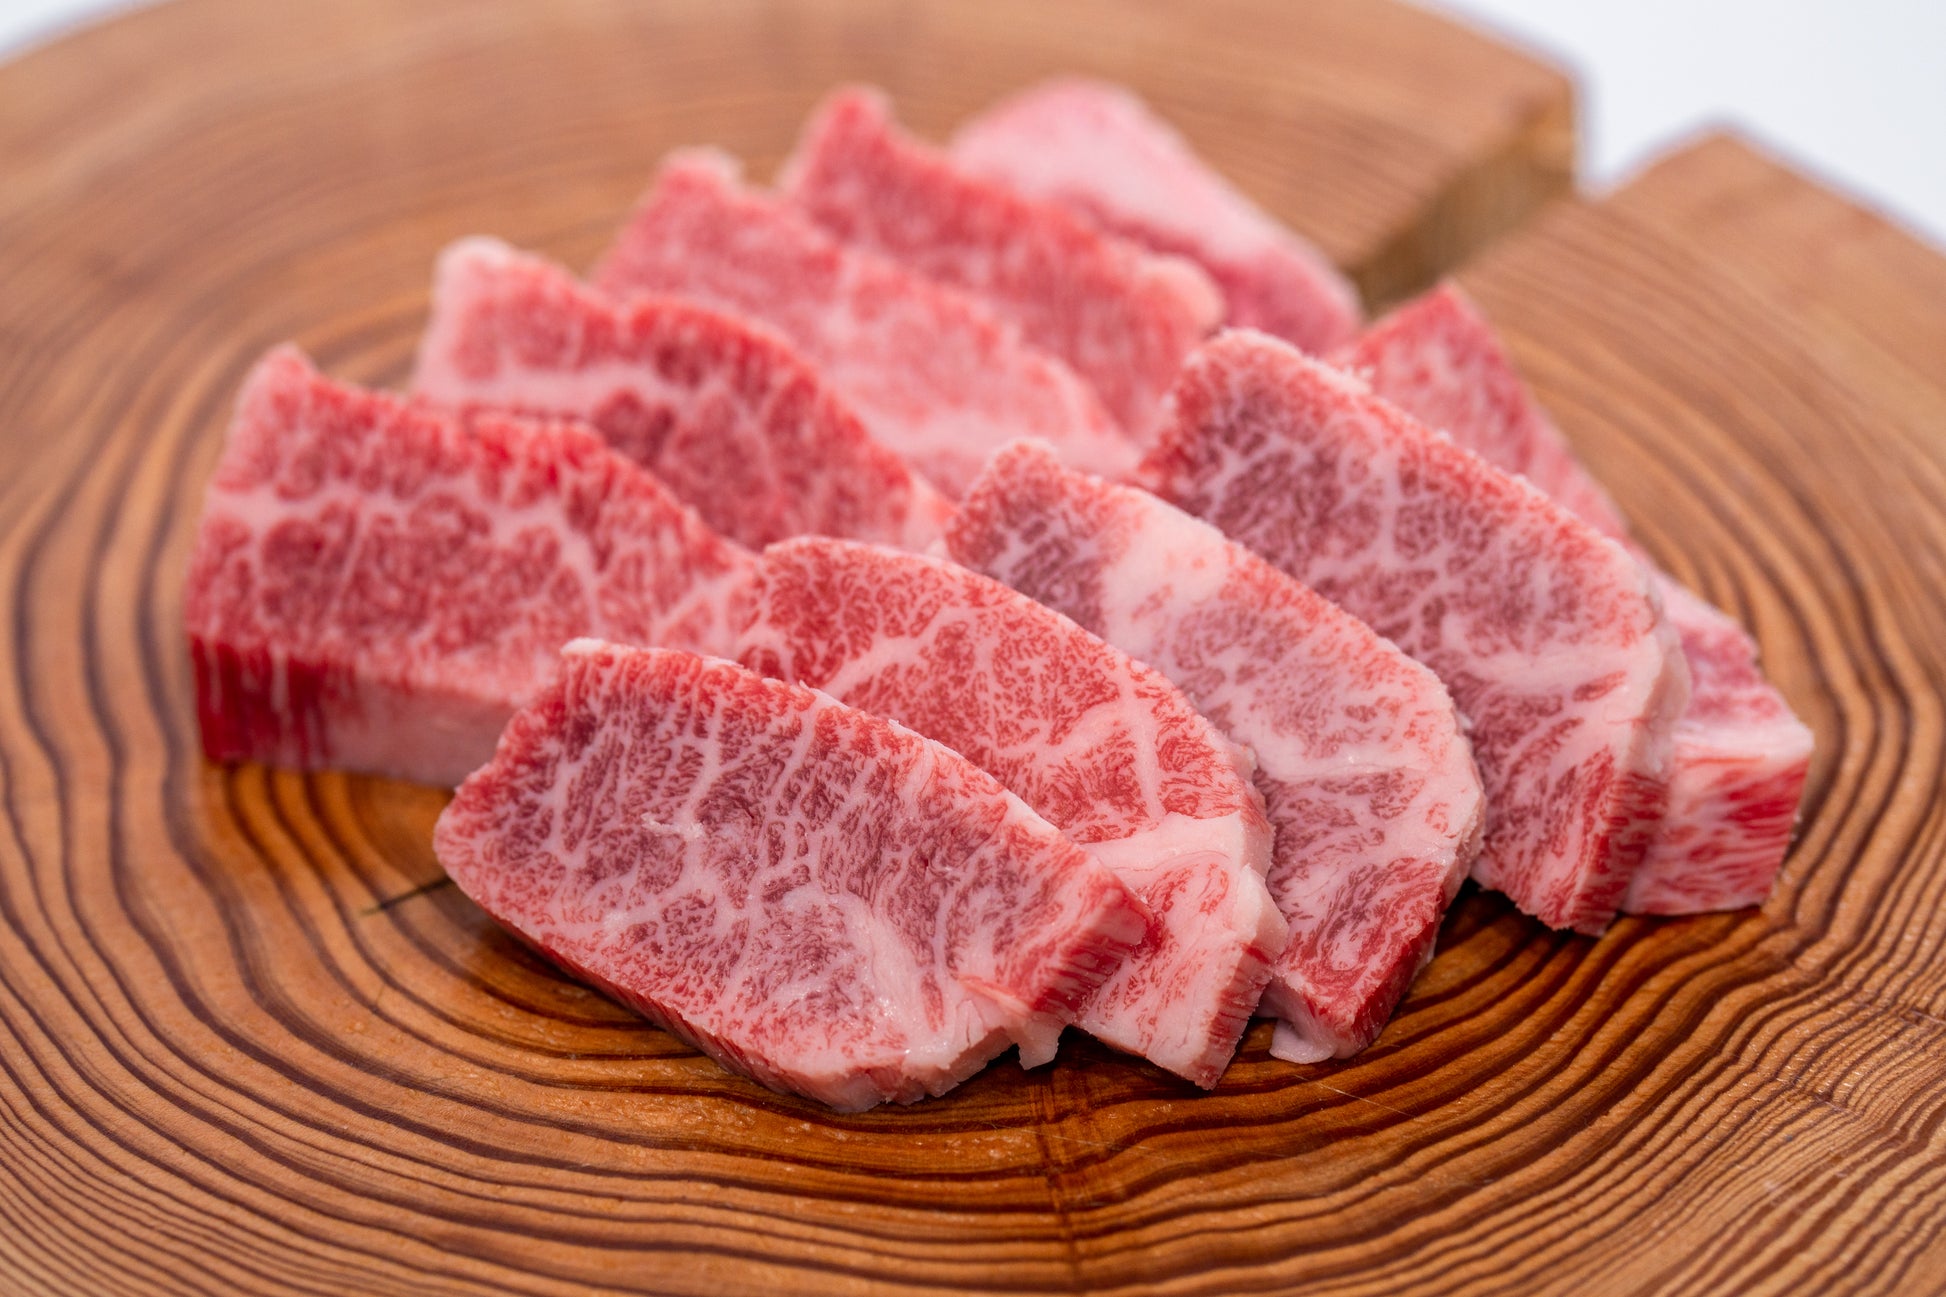 上質な脂が適度に入ったバラ肉は、焼肉に最適です。 肉質は柔らかく、噛むと脂の甘みが広がり肉の旨さが際立ちます。 塩胡椒だけでも美味しくいただけますが、タレなどをつけても負けない肉の旨味をお楽しみいただけます。